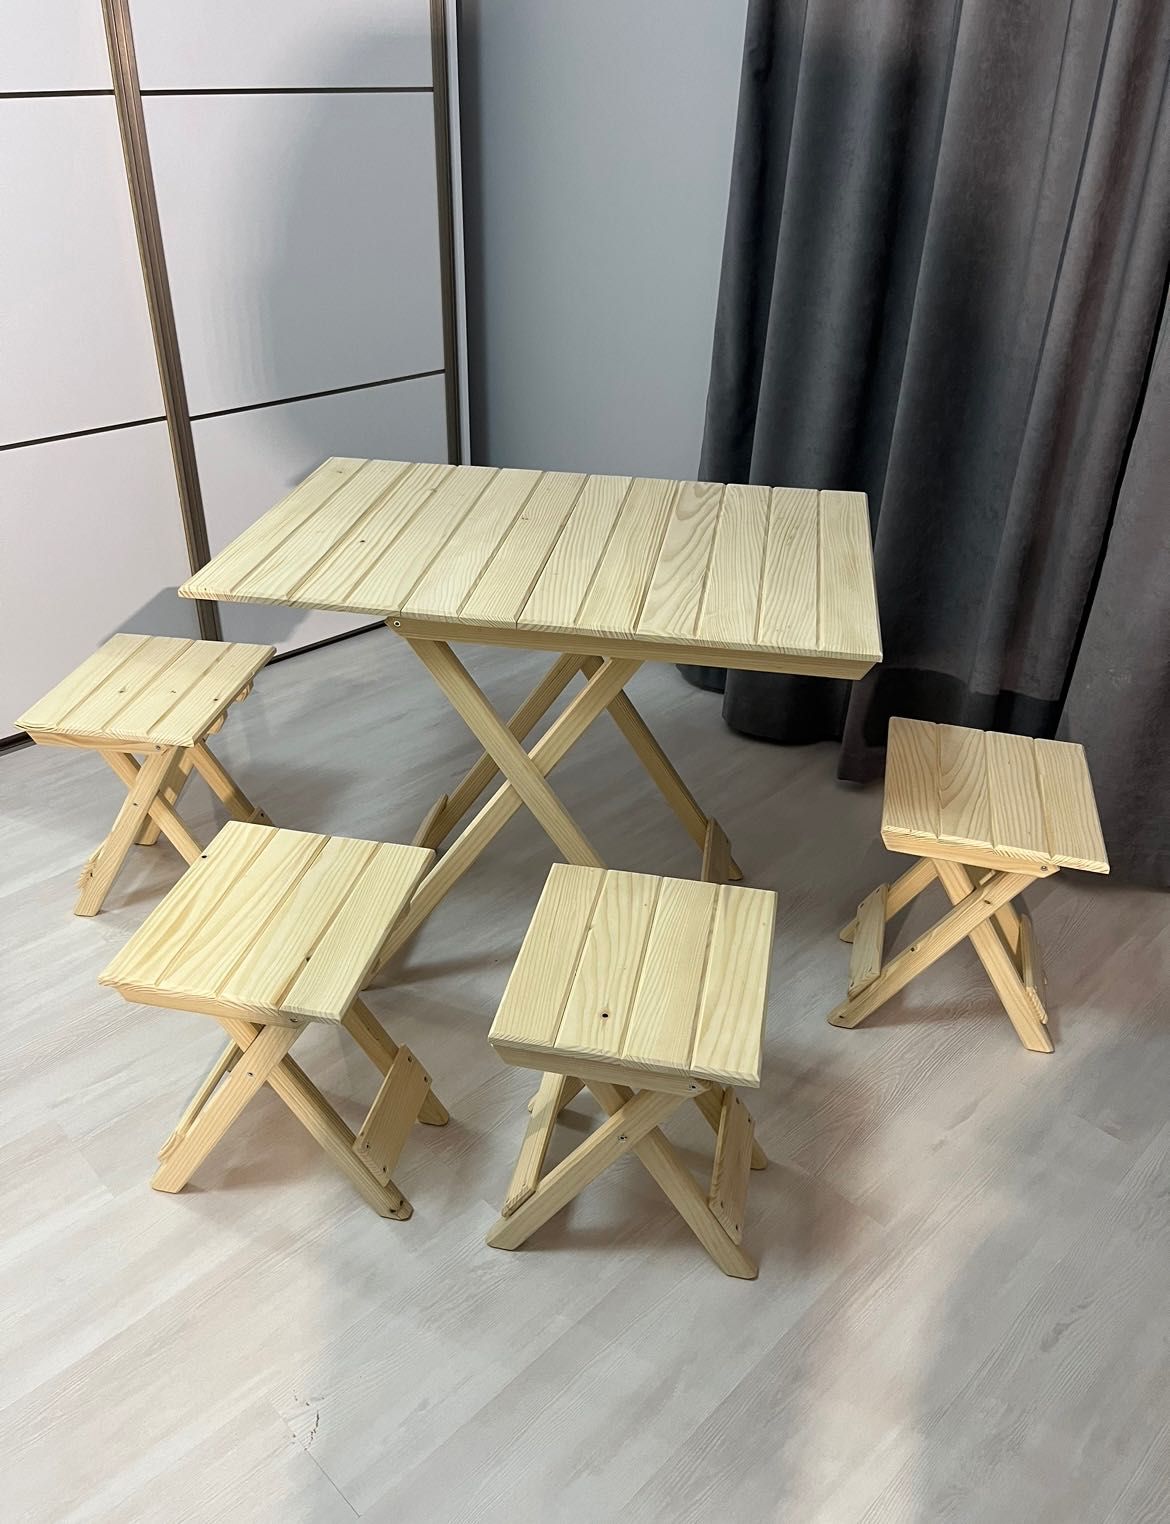 Розкладний деревʼяний стіл, розкладні  деревʼяні стільчики